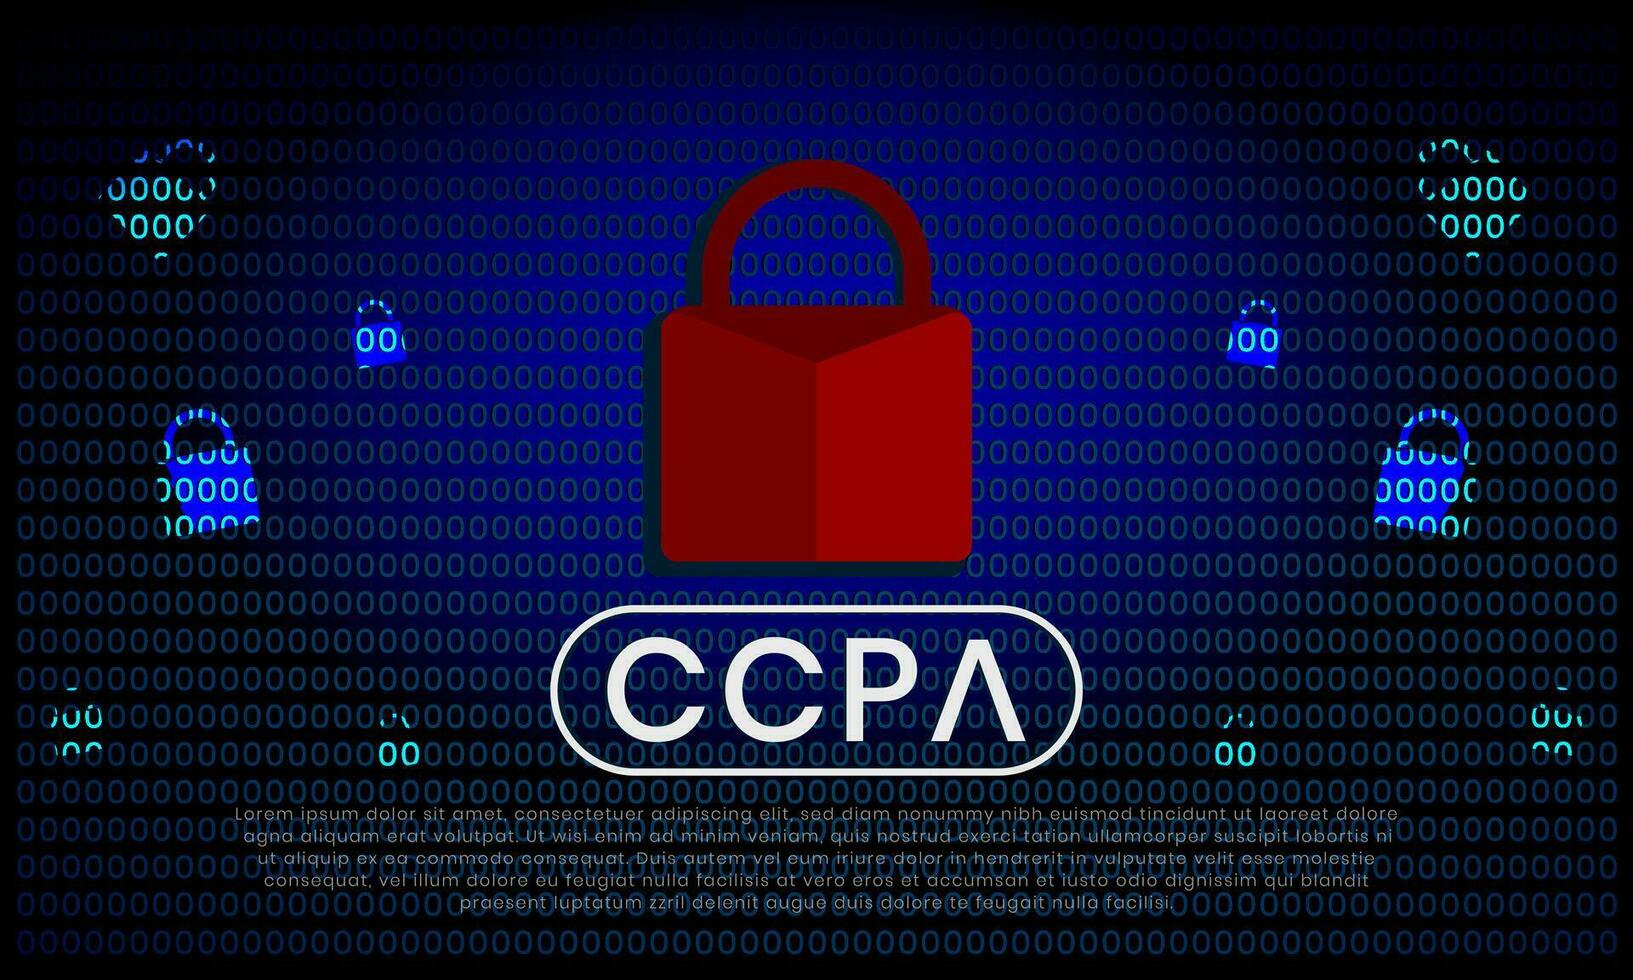 kalifornien konsument Integritet spela teater ccpa symbol med låsa illustration för redaktionell och webbplatser vektor